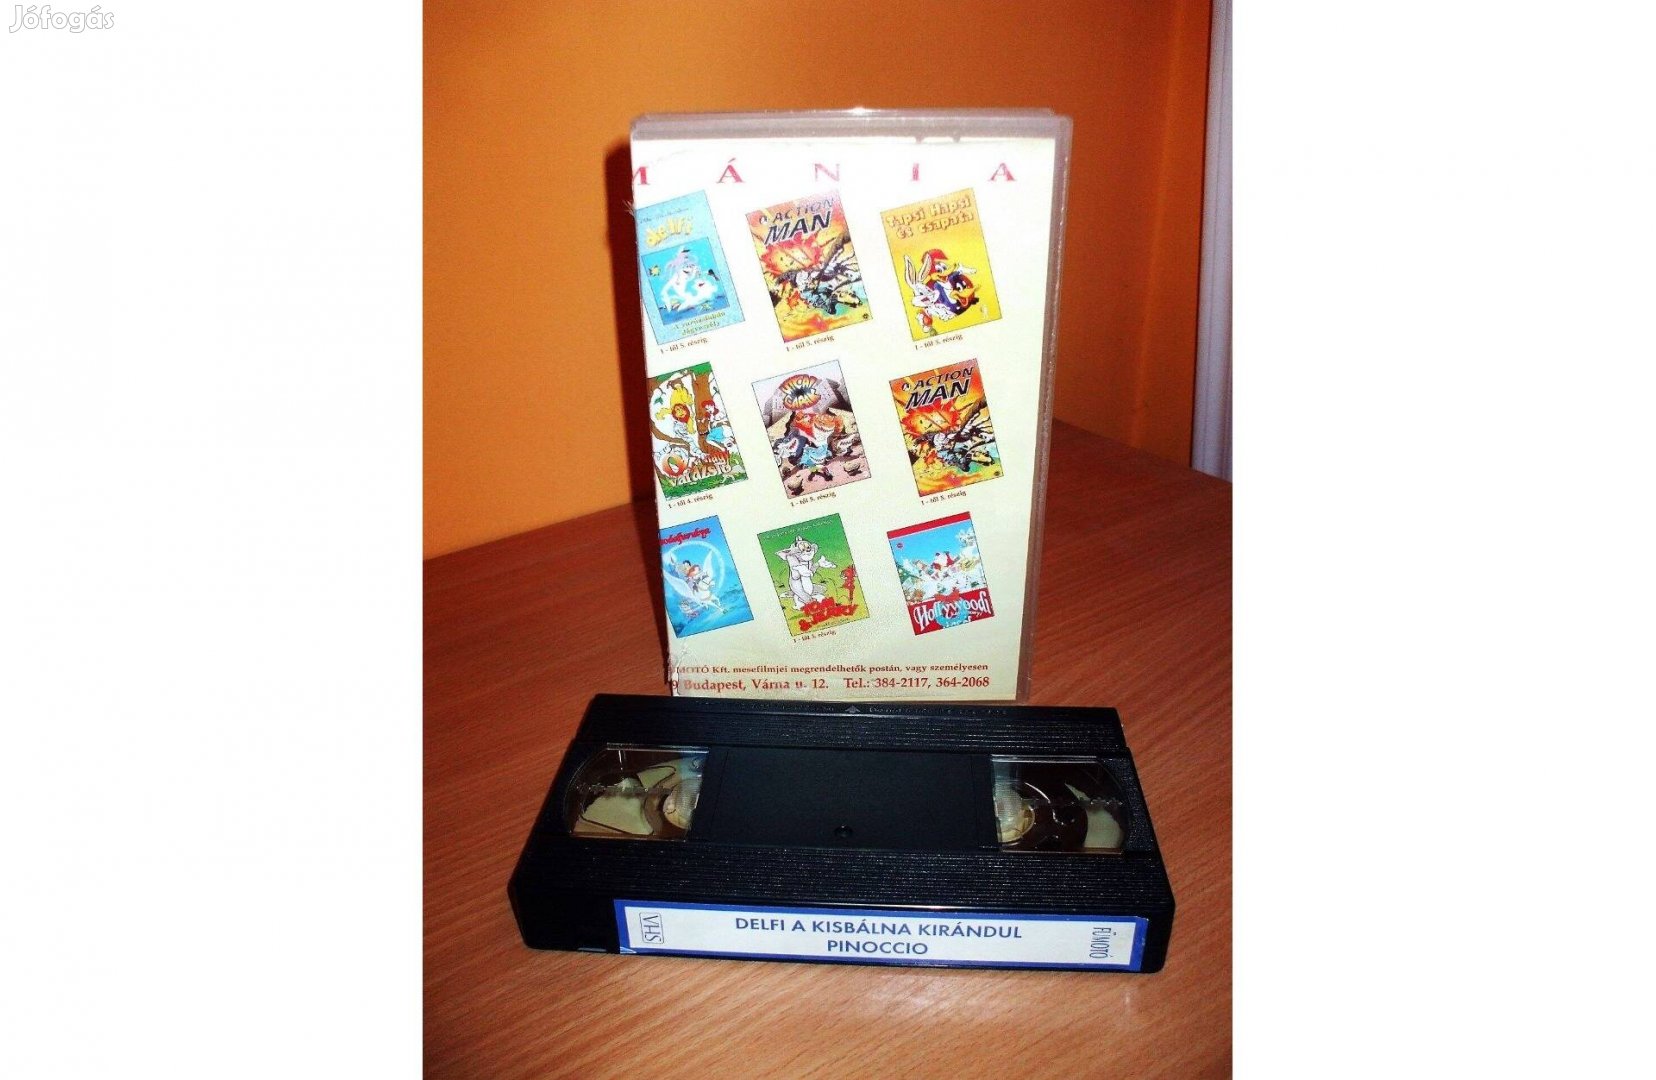 Mese Mánia: Pinoccio, Delfi a kisbálna kirándul, VHS 2 film 1 kazettán